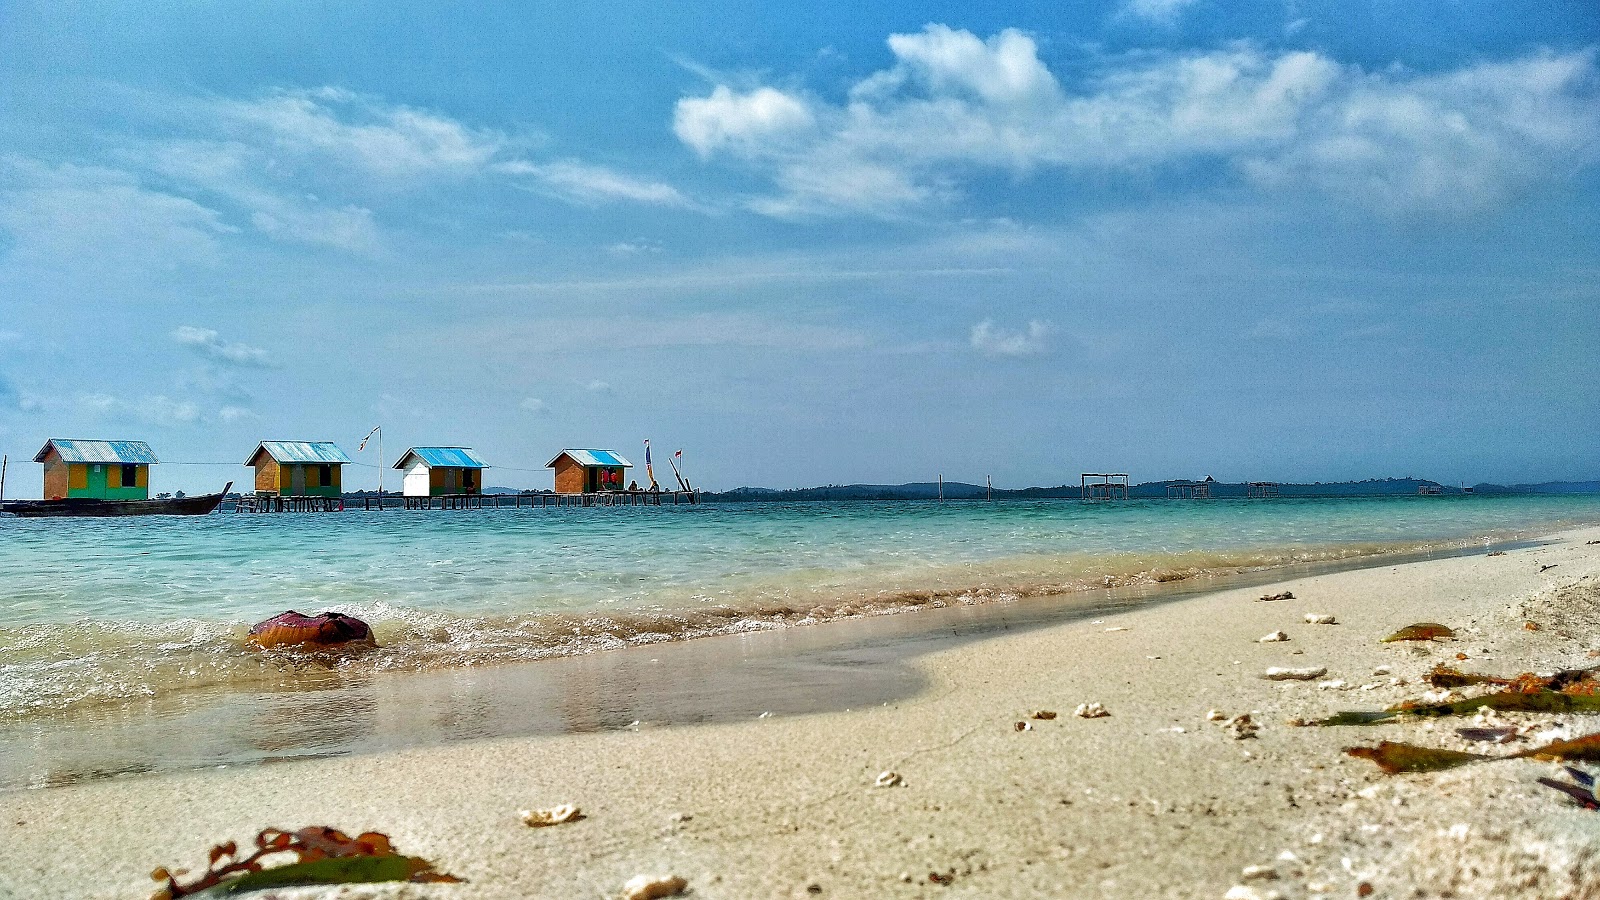 Wisata Pulau Mubut Darat'in fotoğrafı ve yerleşim